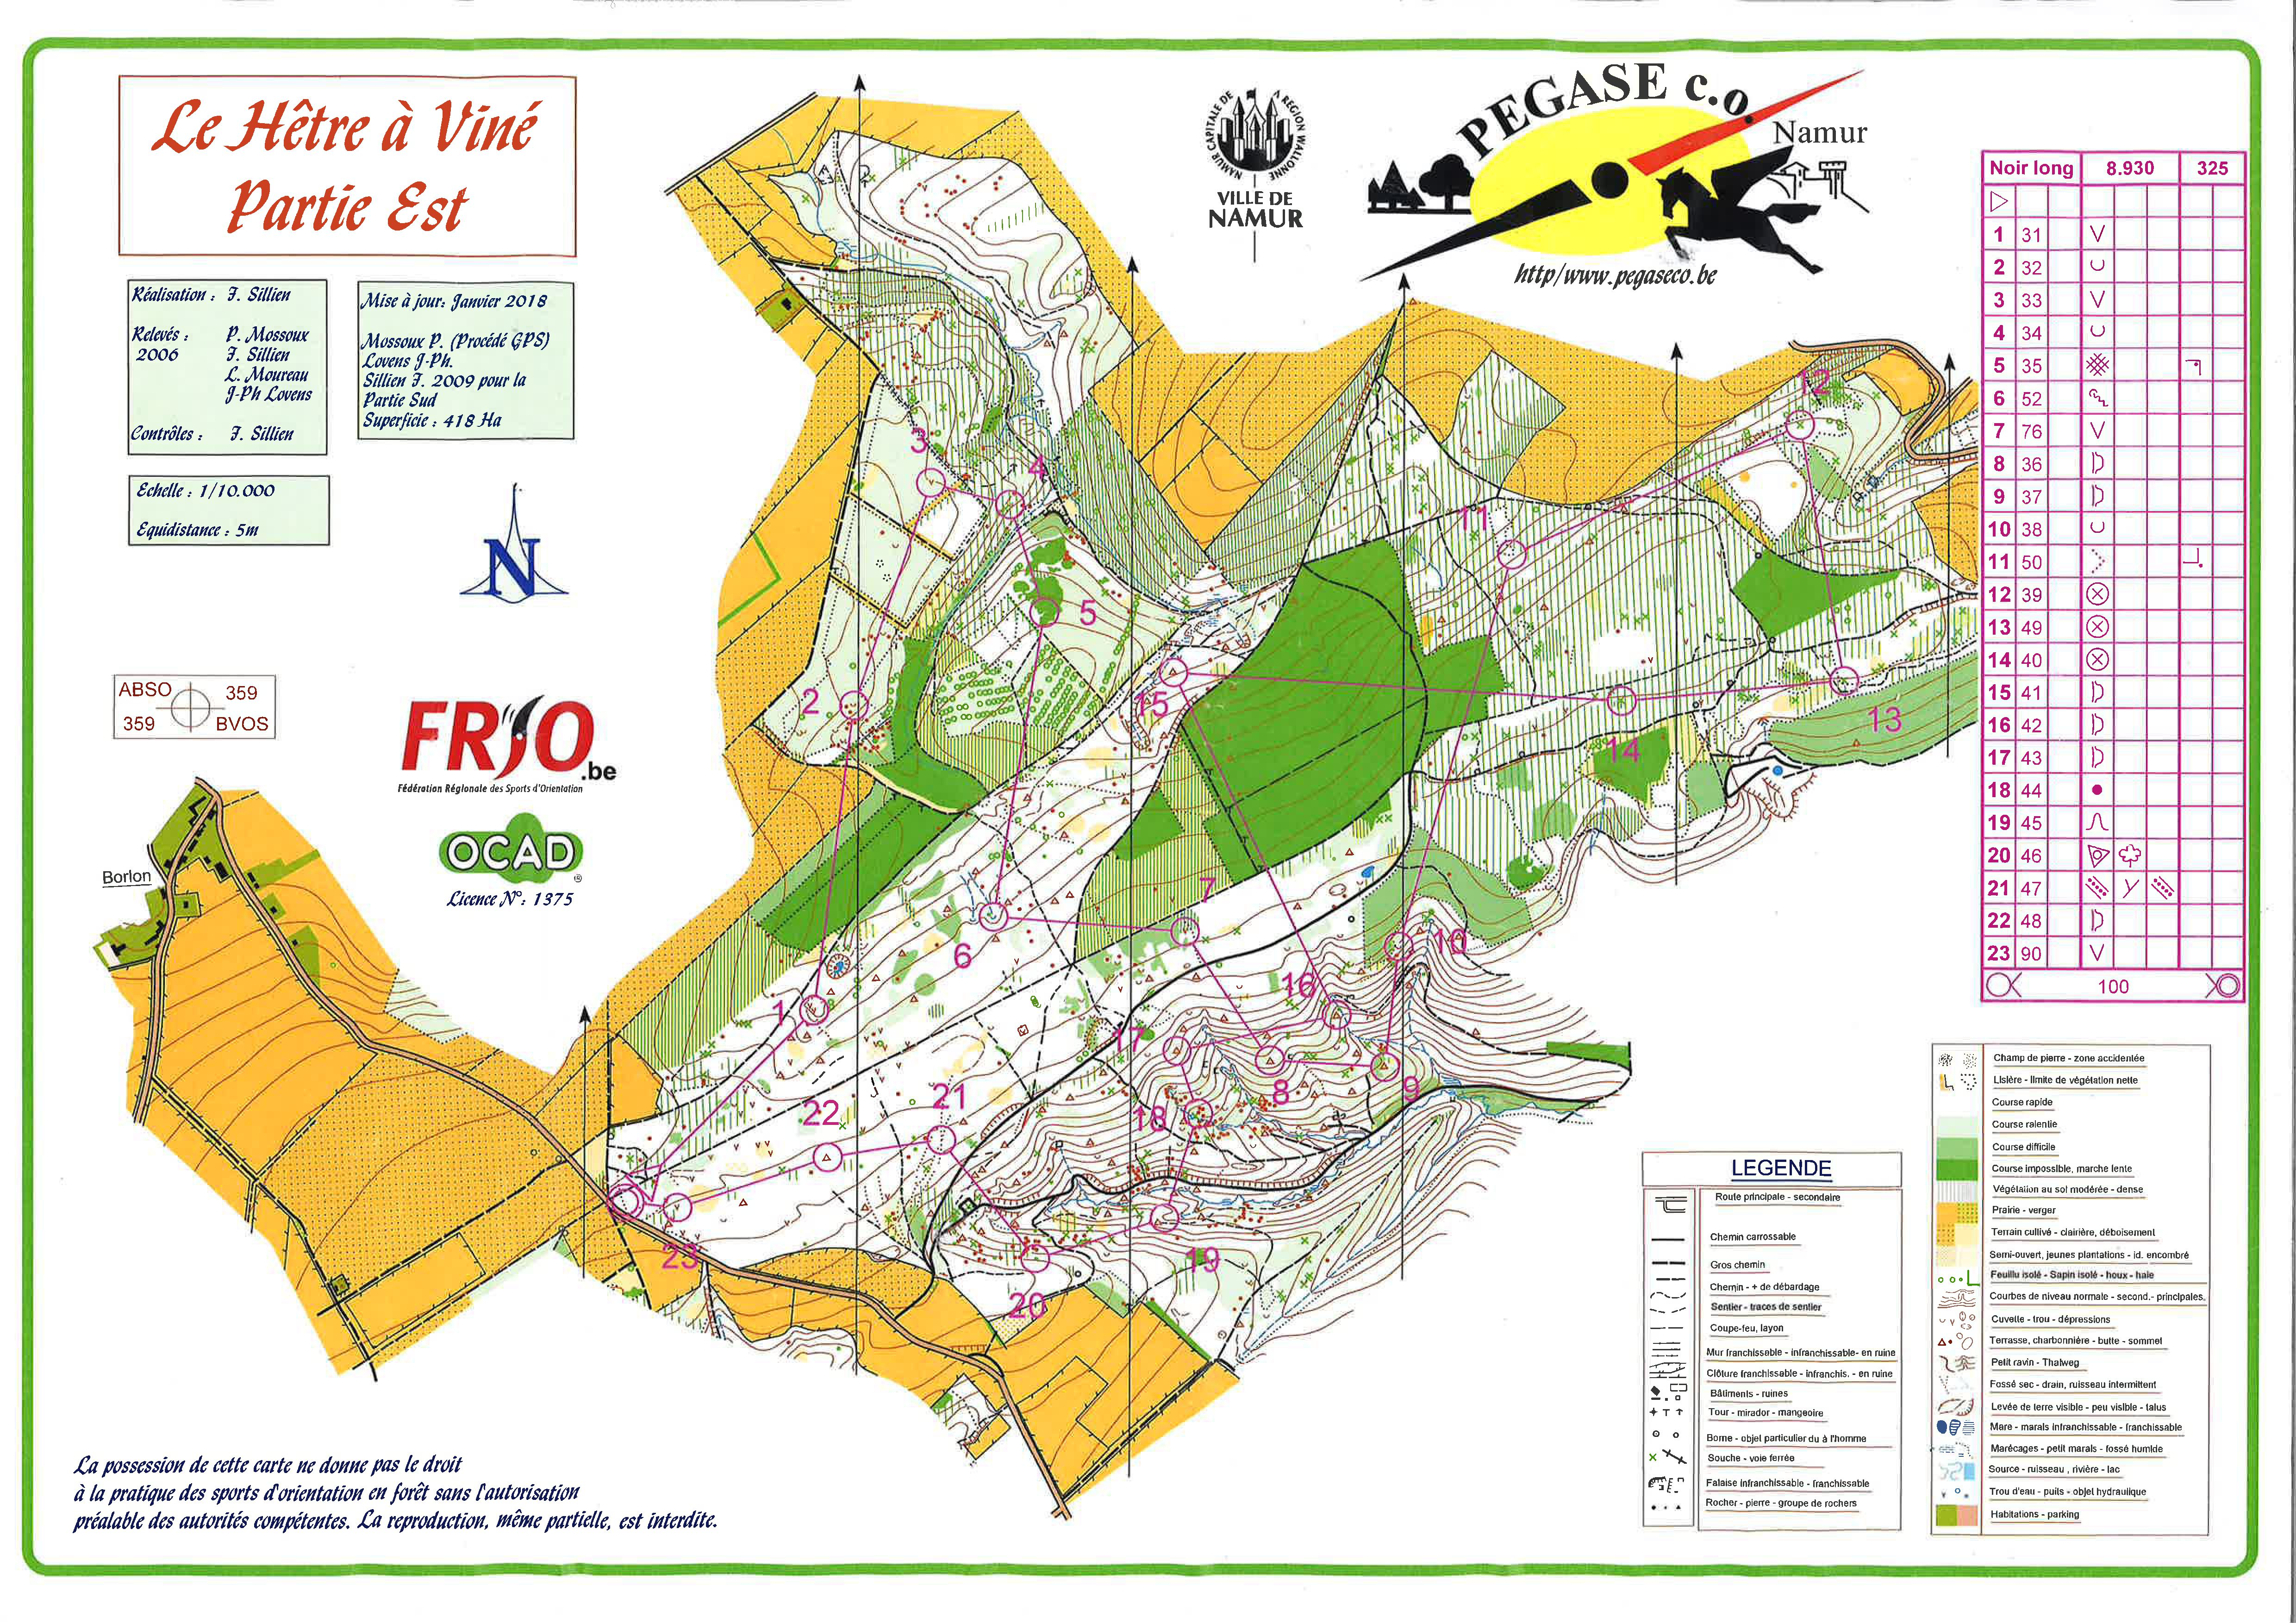 Régionale Borlon - Noir Long (2002-08-19)